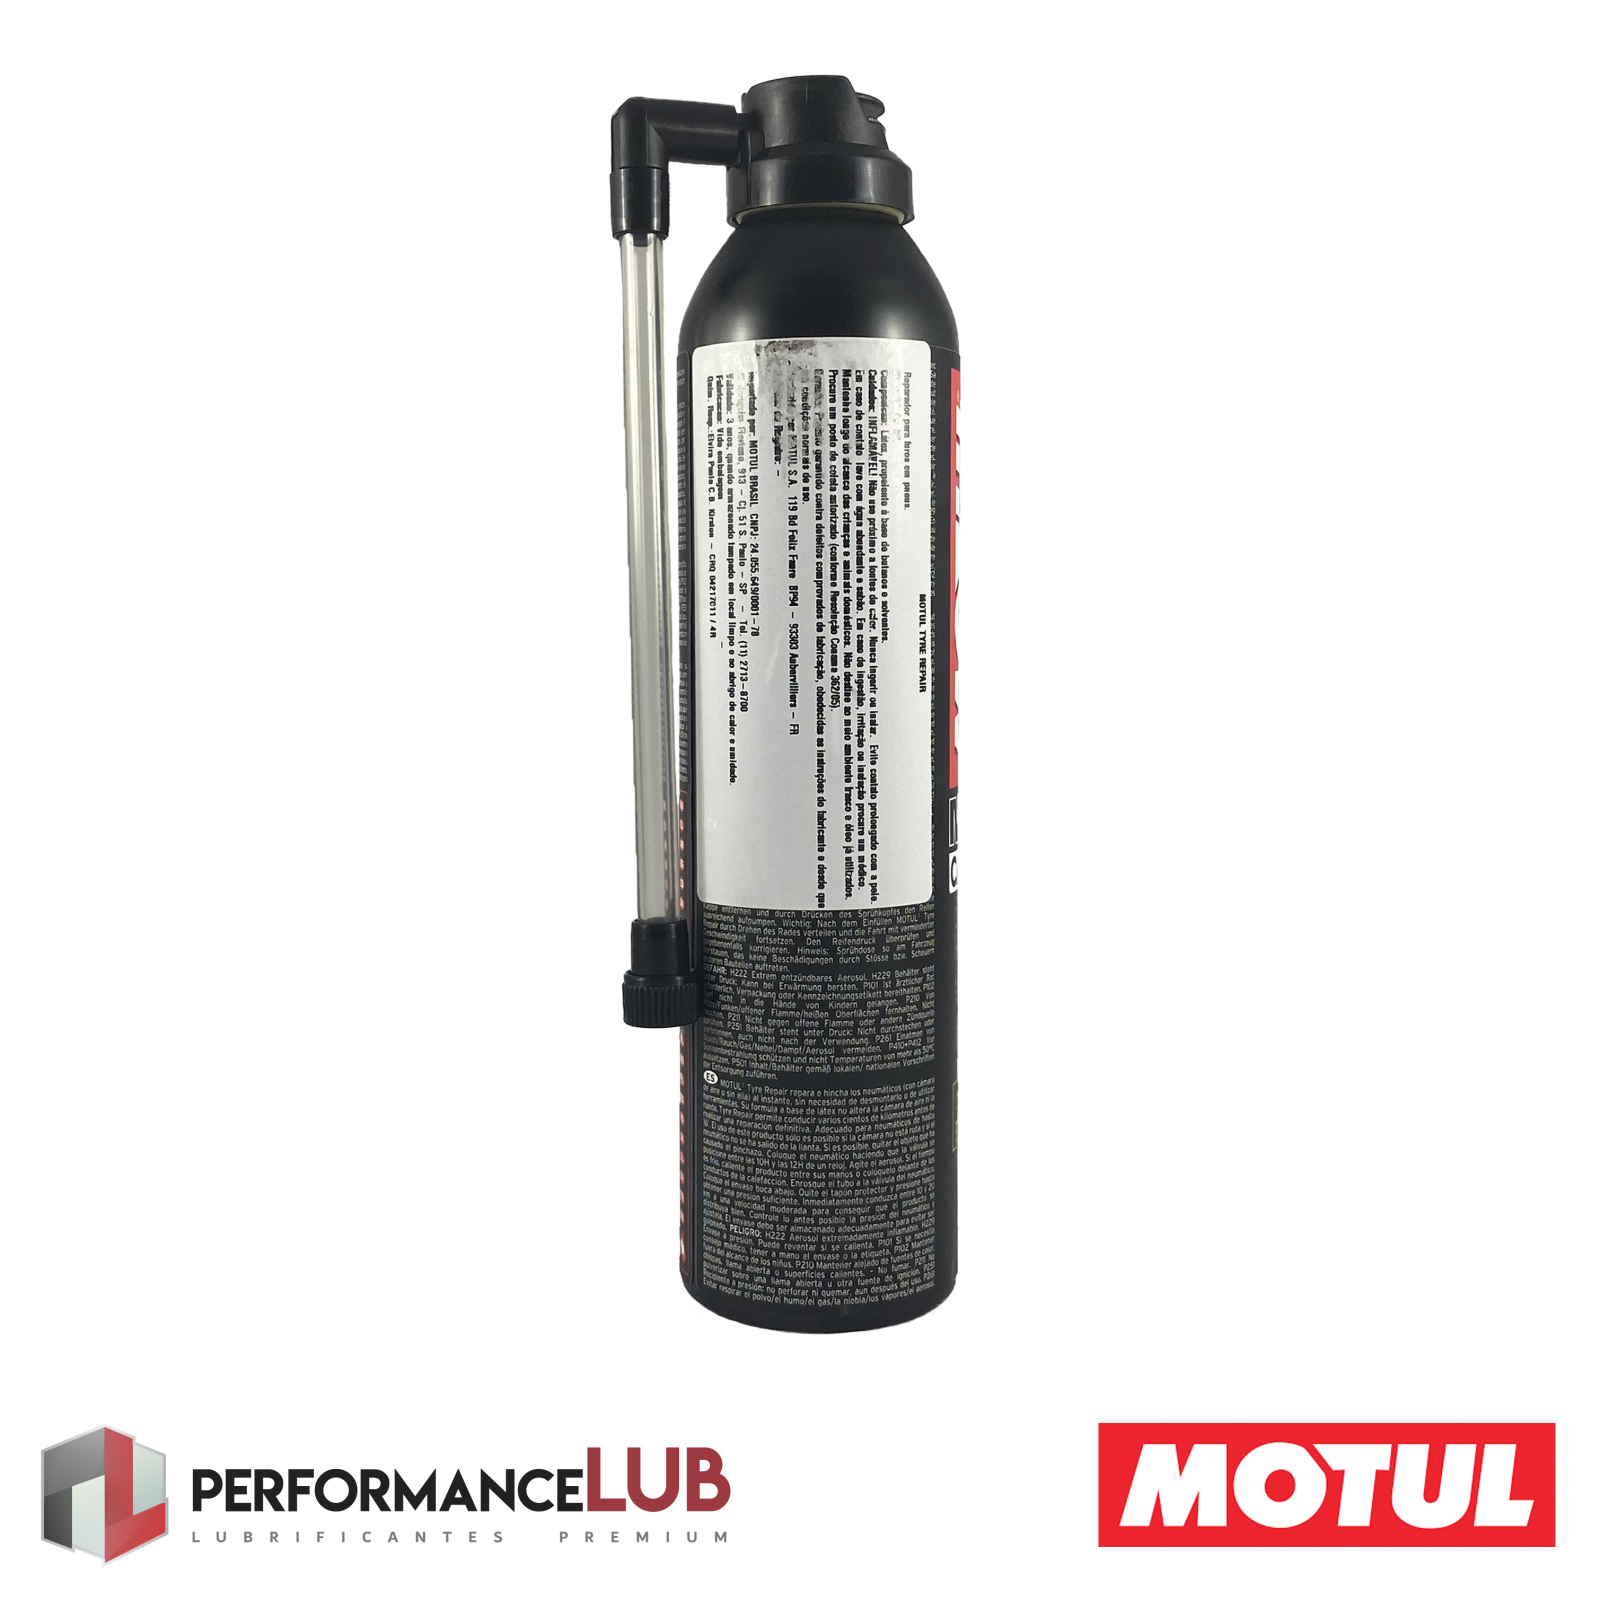 Motul P3 Tyre Repair - 300 ml - PerformanceLUB Lubrificantes Premium